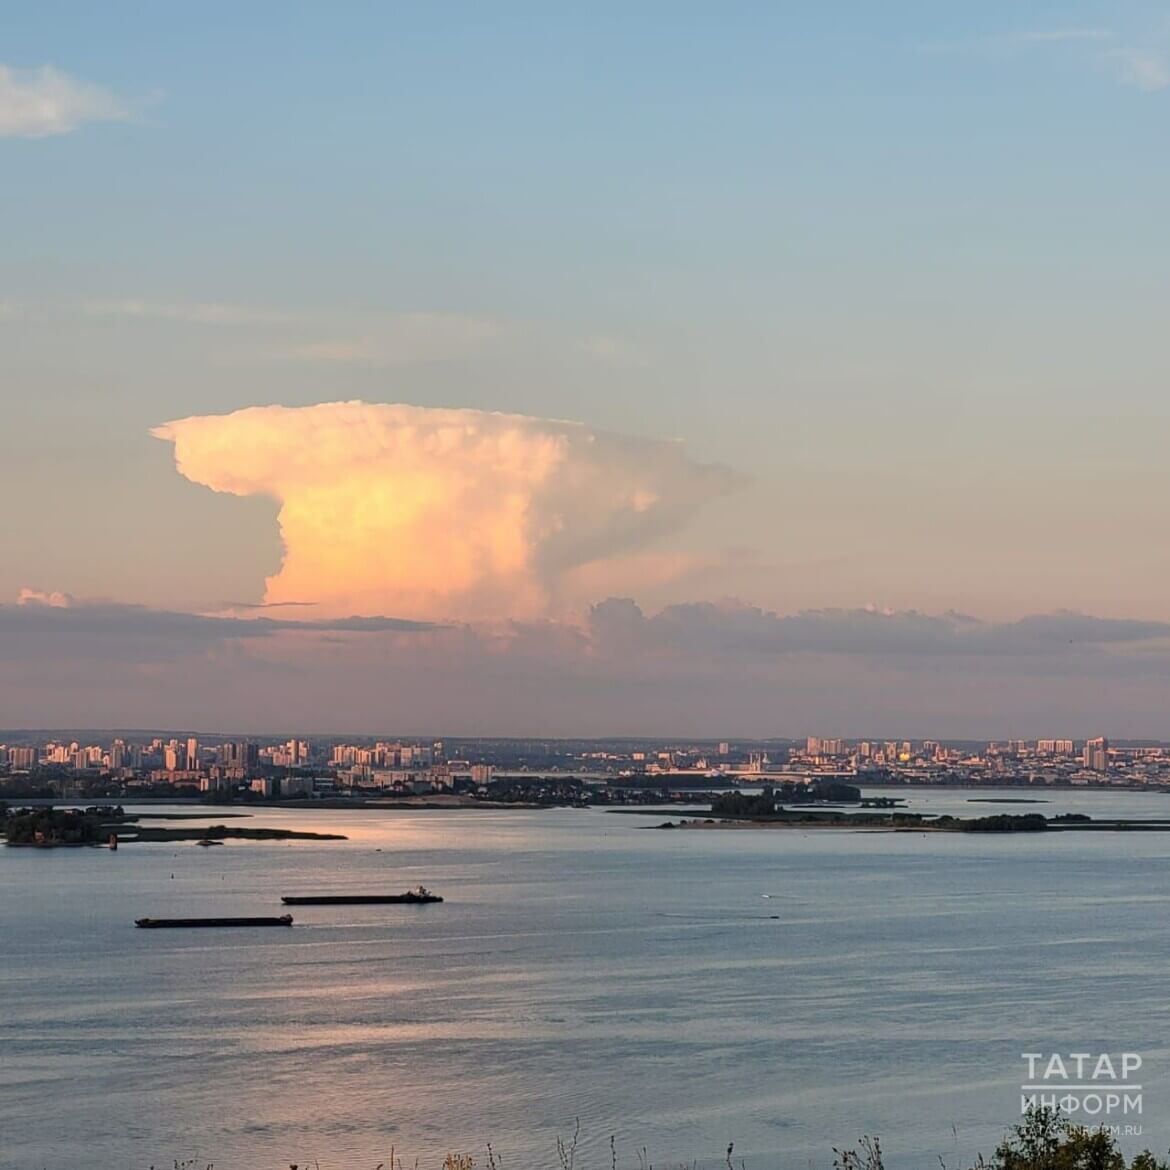 Облако в виде ядерного гриба в Казани. Очевидцы грибовидного облака опубликовали много фотографий. Источник: Татар Информ. Фото.